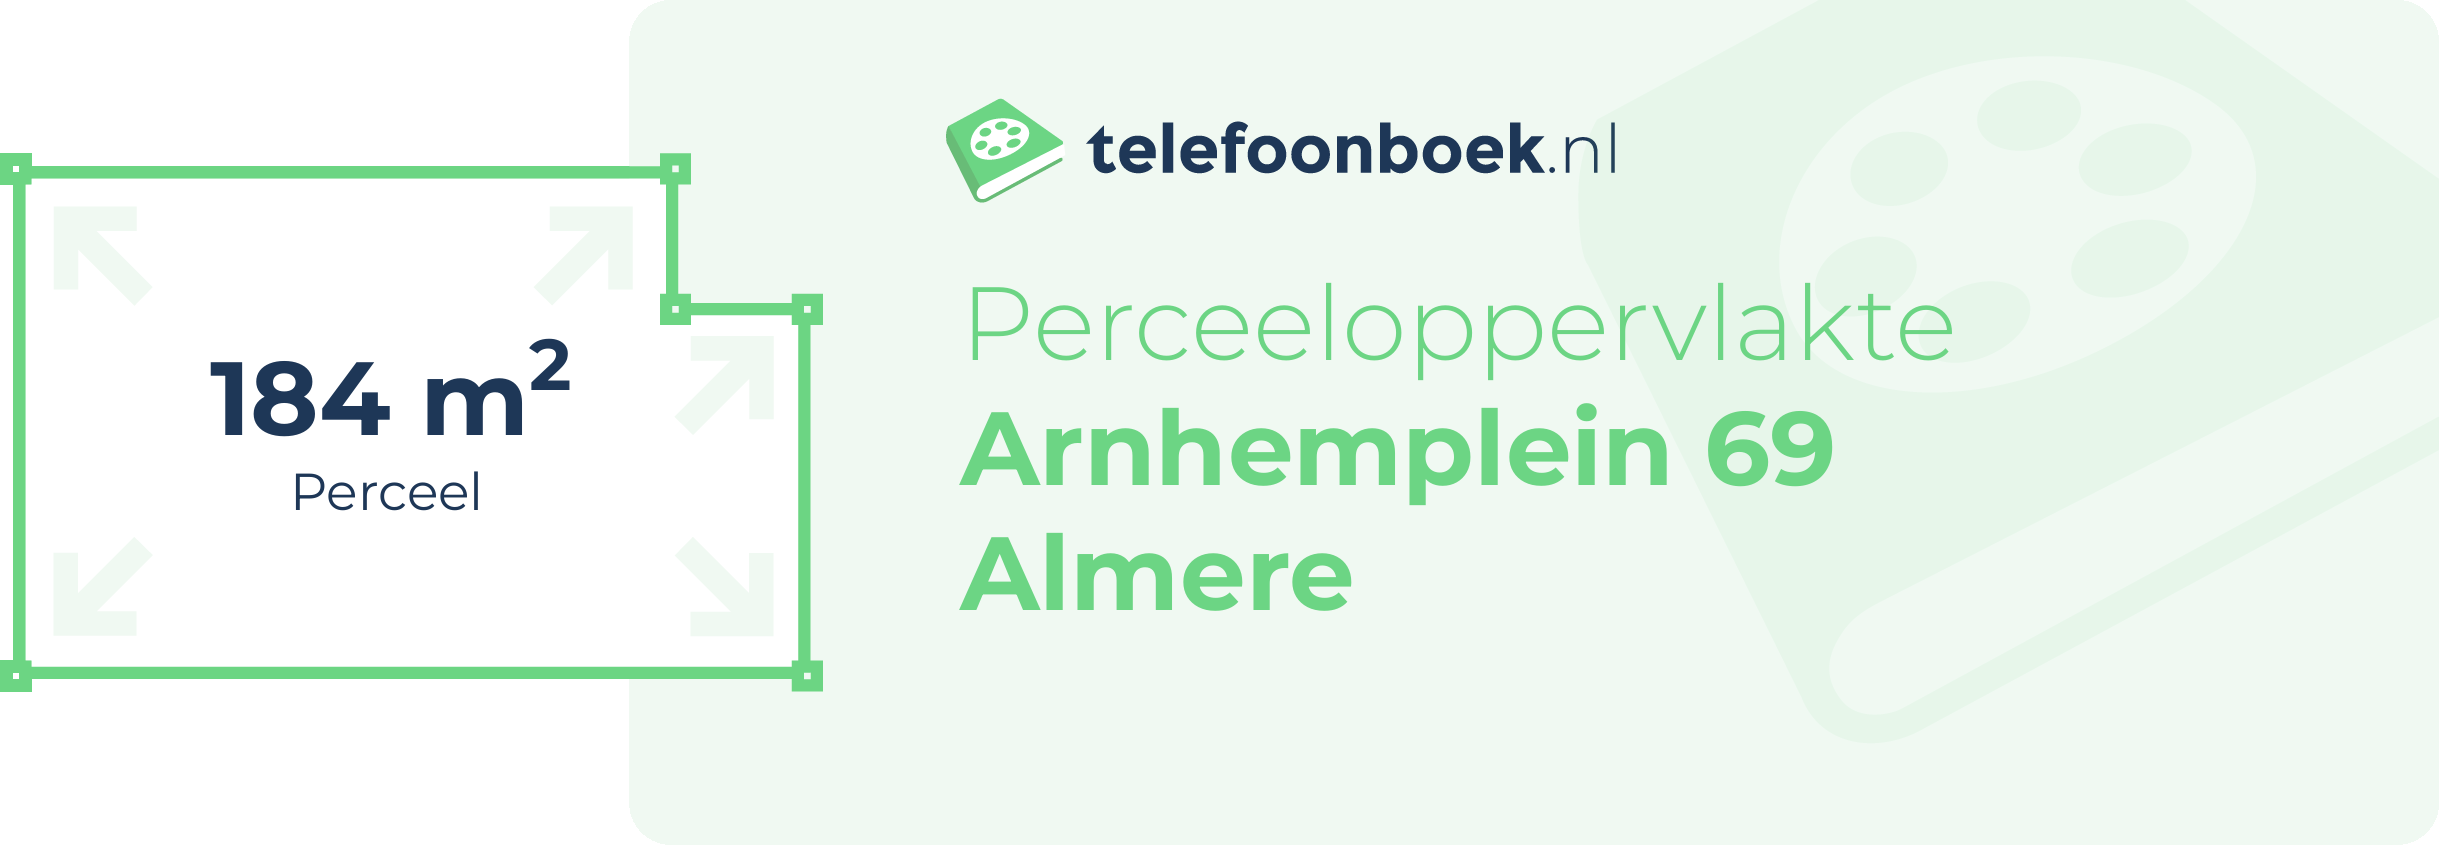 Perceeloppervlakte Arnhemplein 69 Almere